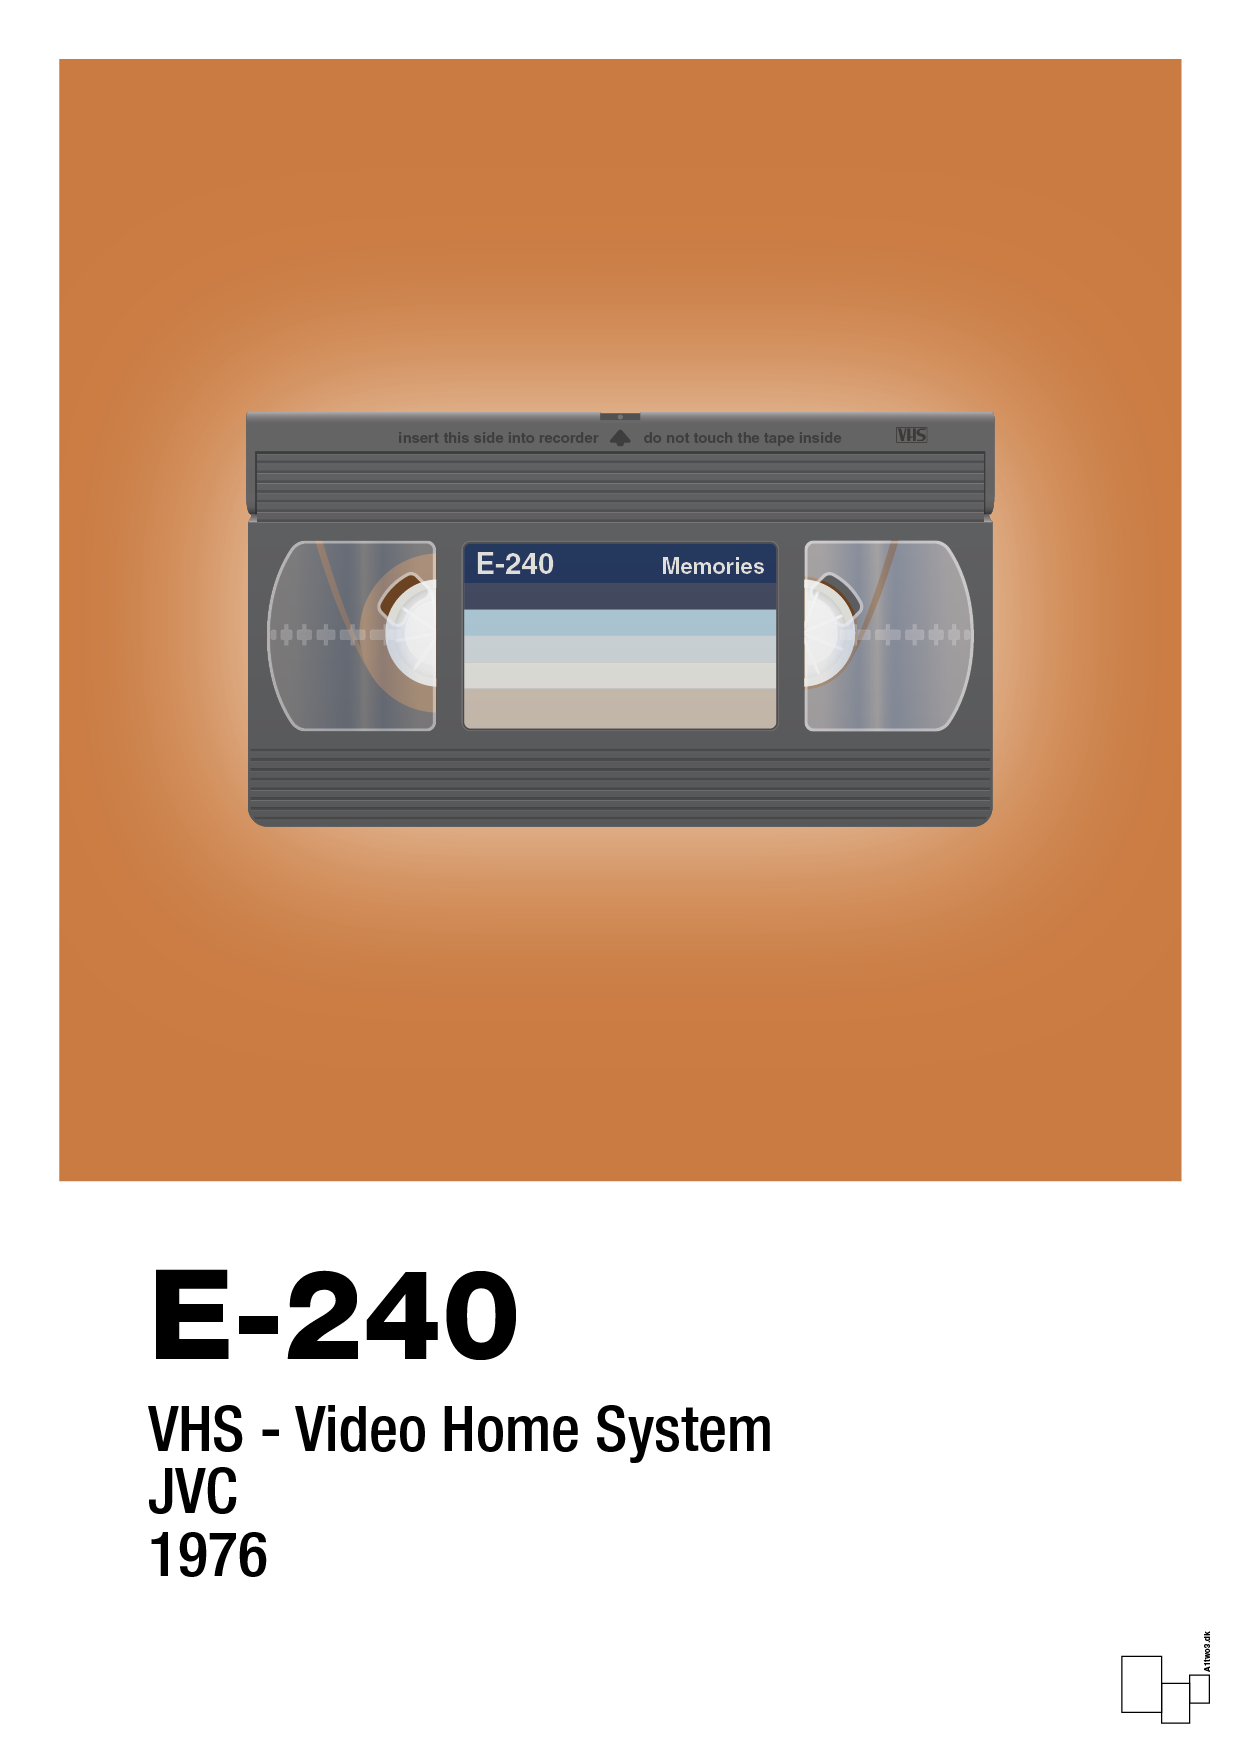 videobånd e-240 - Plakat med Grafik i Rumba Orange